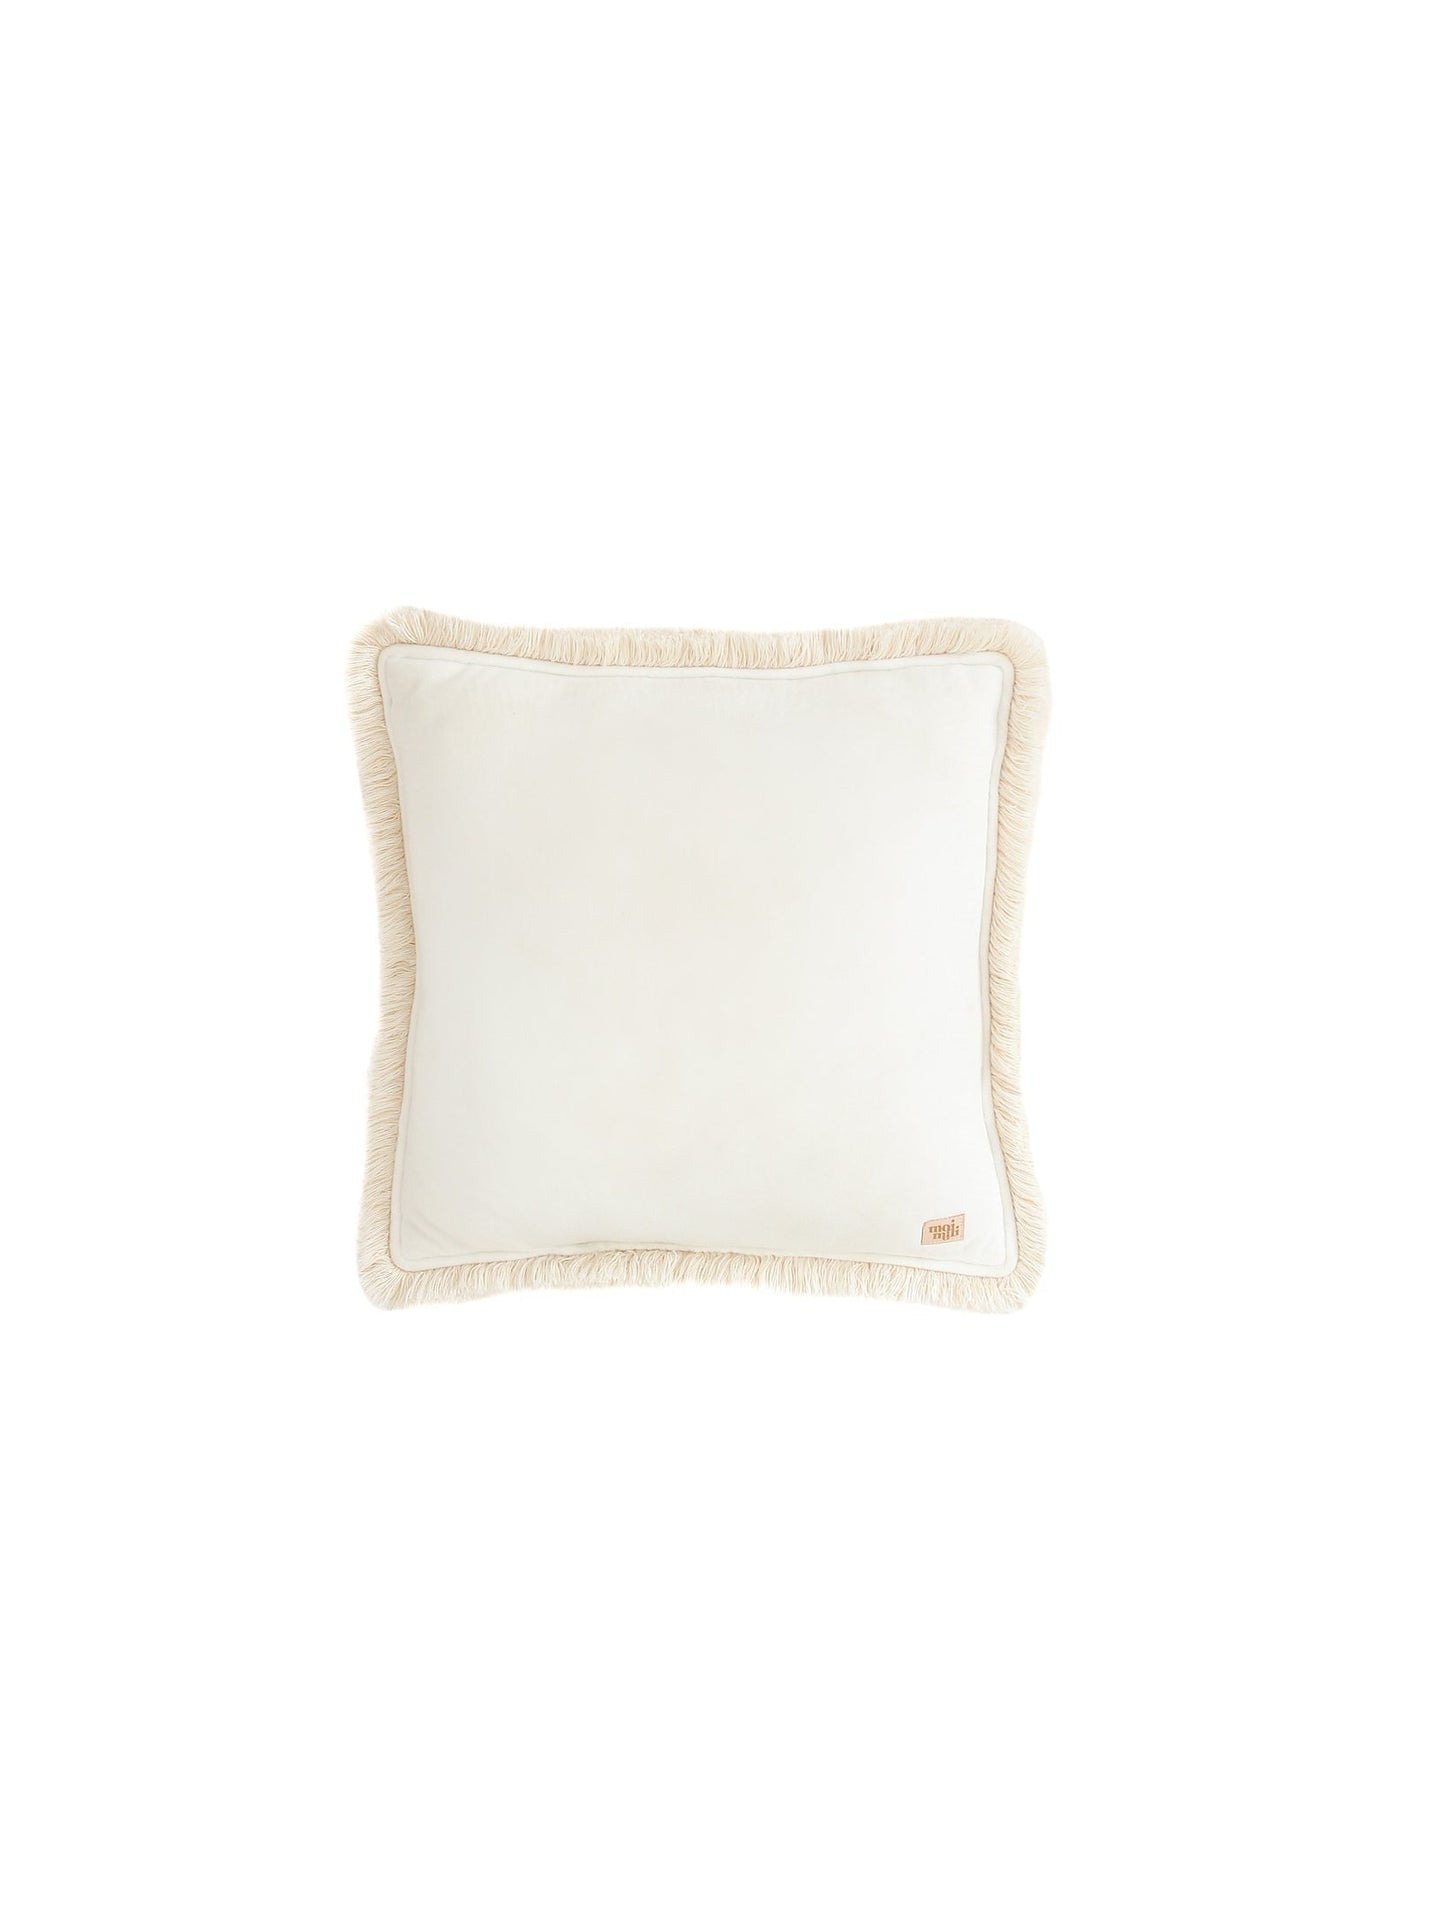 Soft Velvet "White" Pillow with Fringe